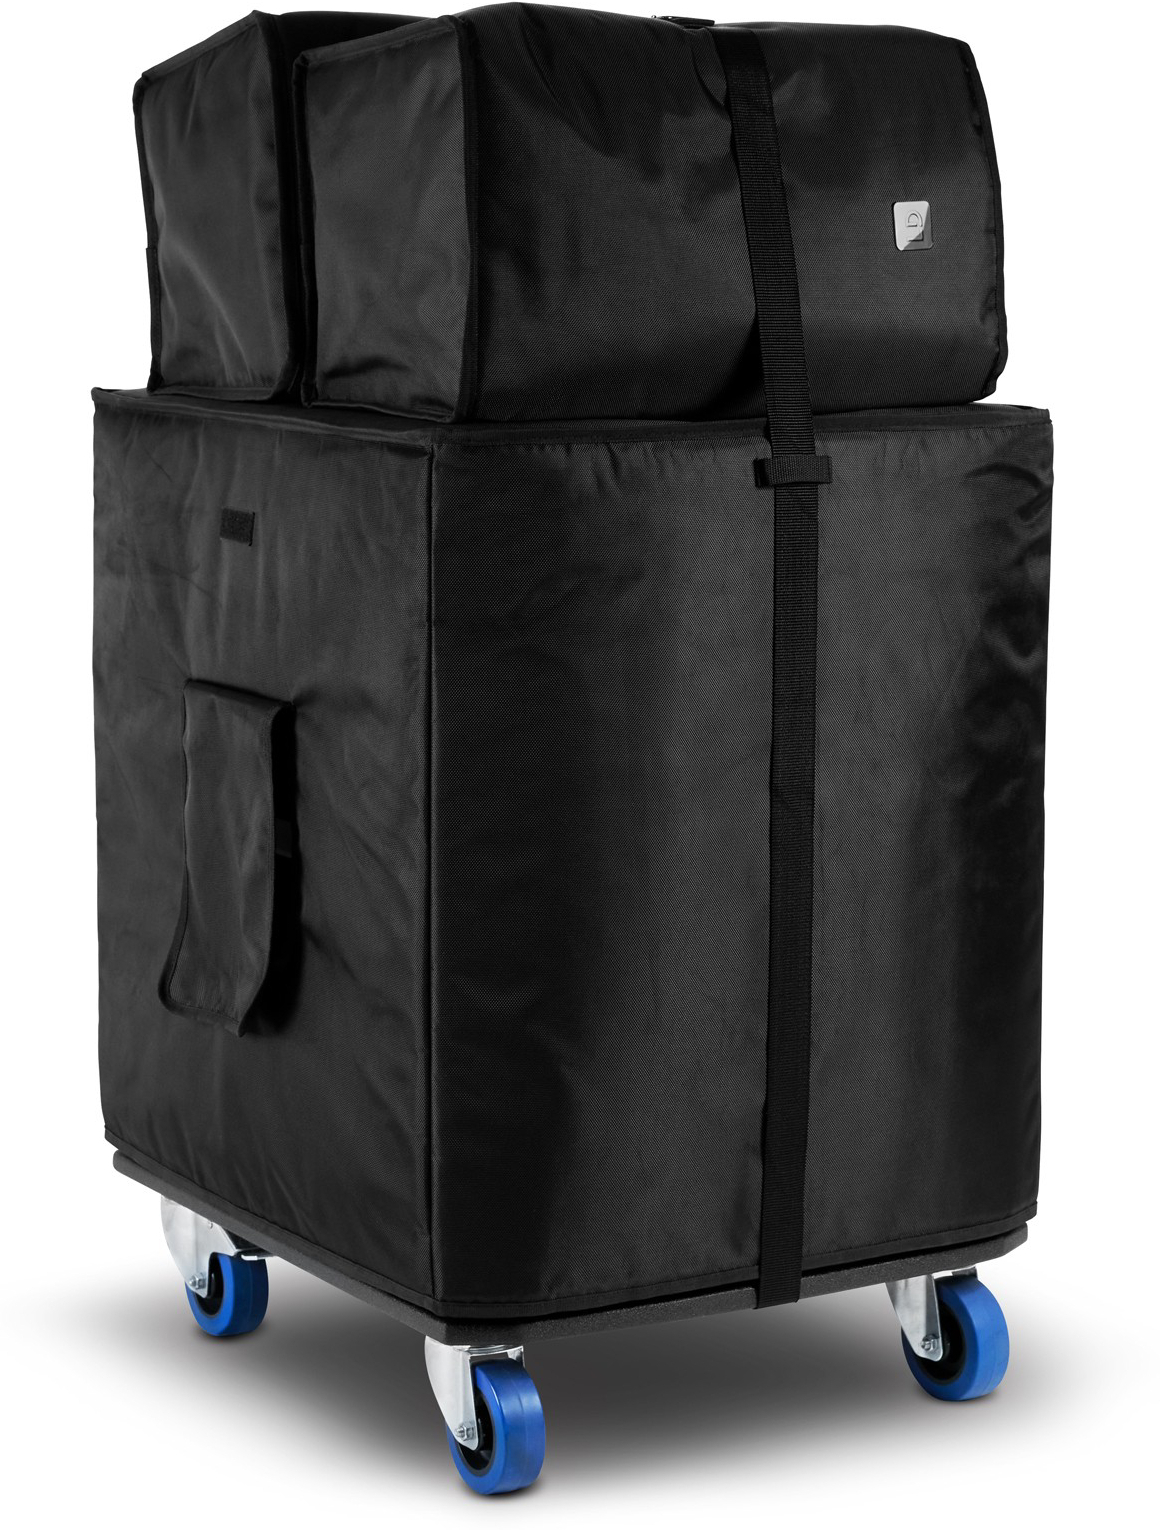 Ld Systems Dave 18 G4x Bag Set - Tasche für Lautsprecher & Subwoofer - Main picture